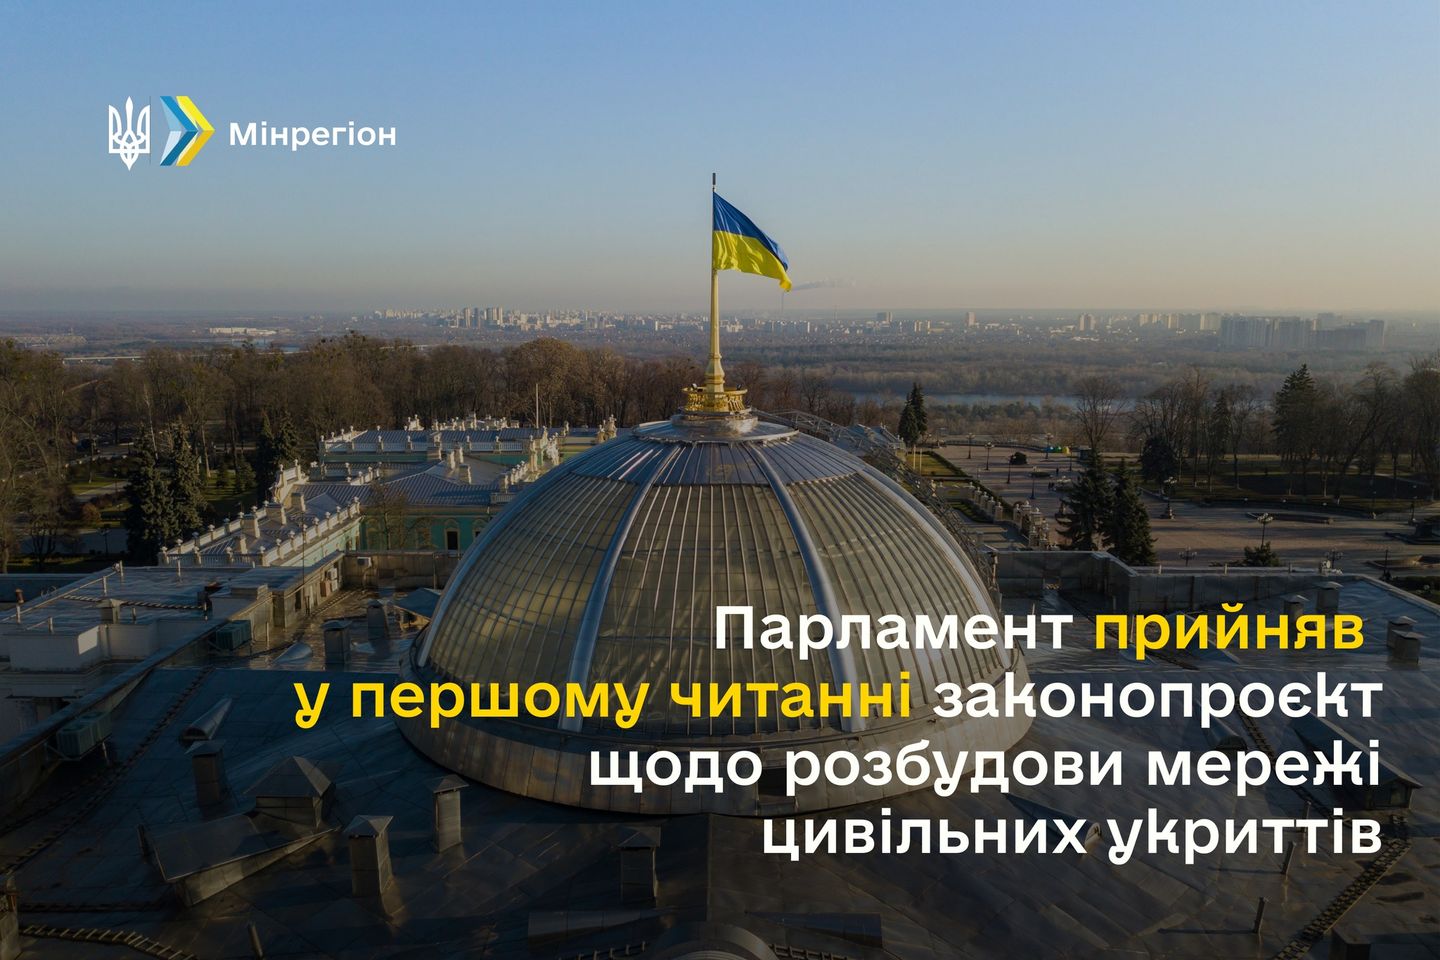 Олексій Чернишов: Парламент прийняв у першому читанні законопроект щодо розбудови мережі цивільних укриттів